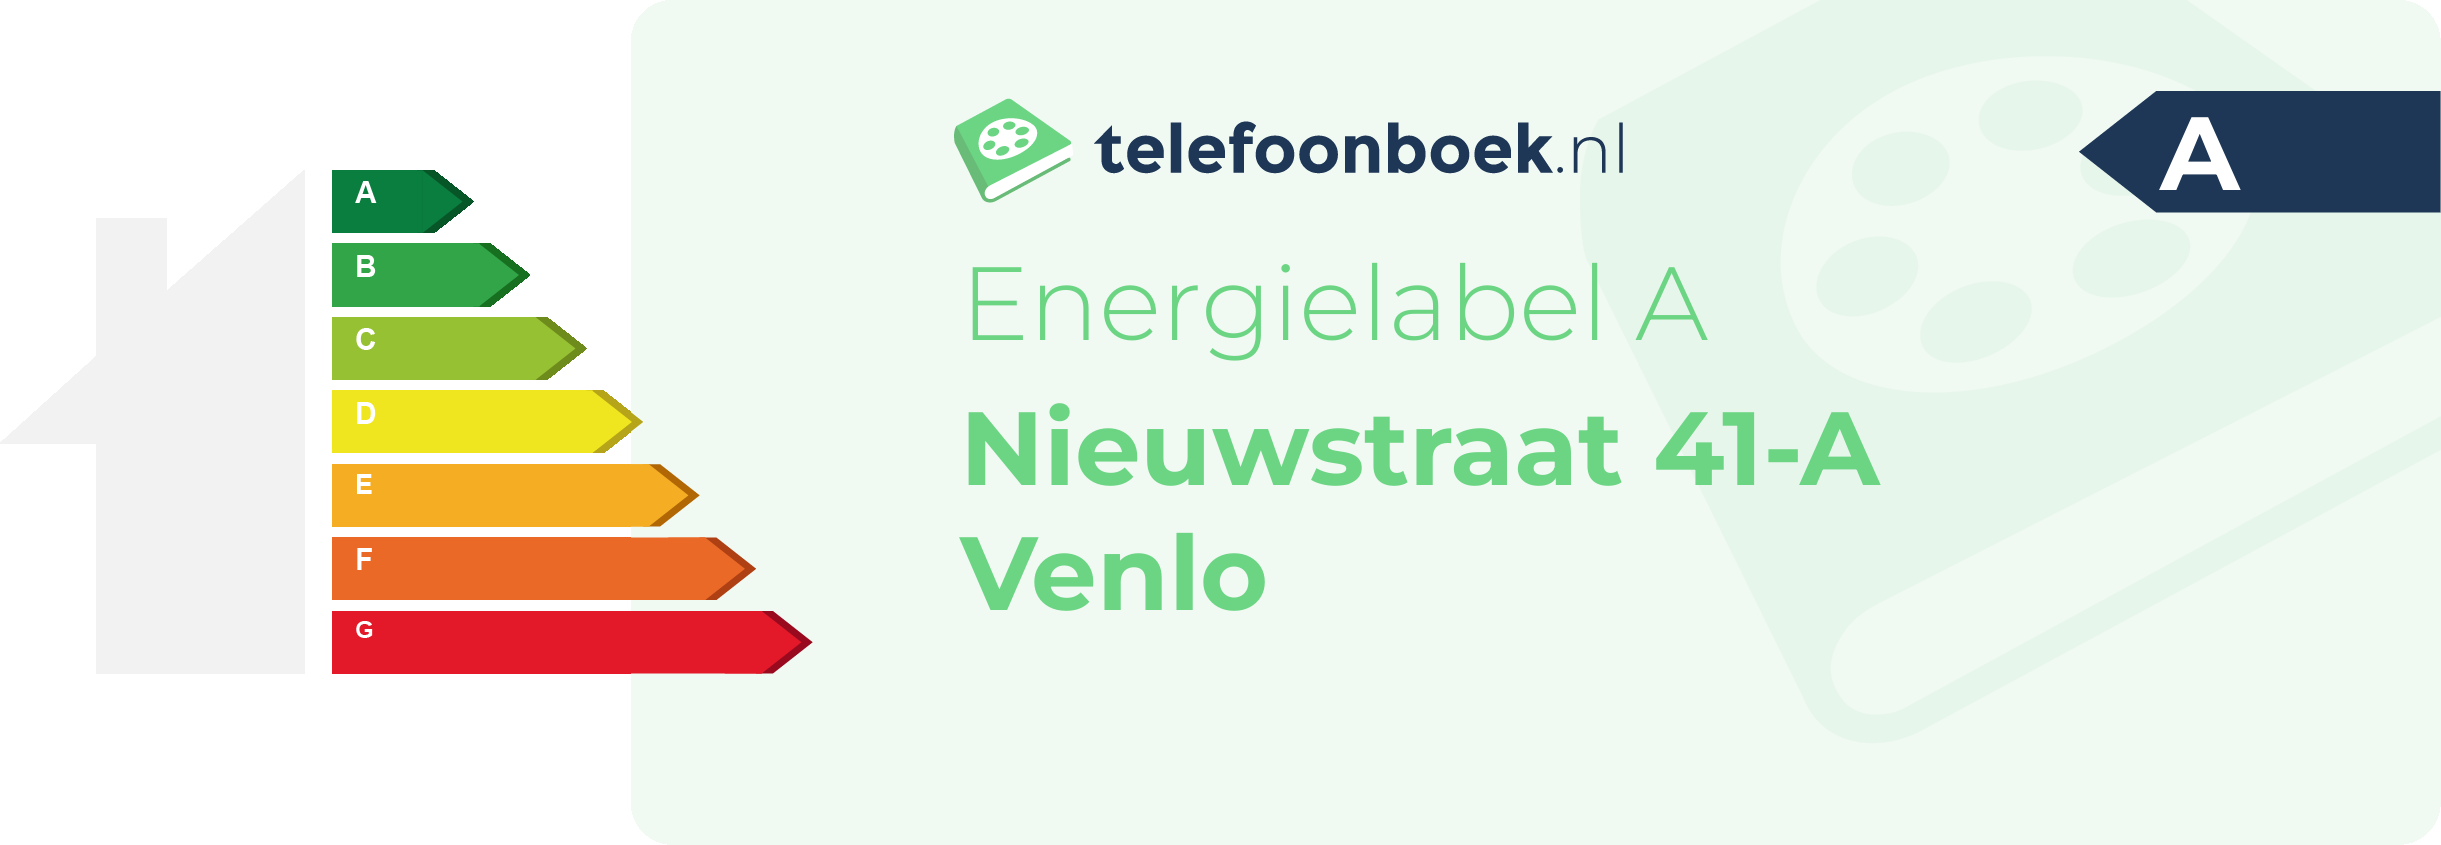 Energielabel Nieuwstraat 41-A Venlo